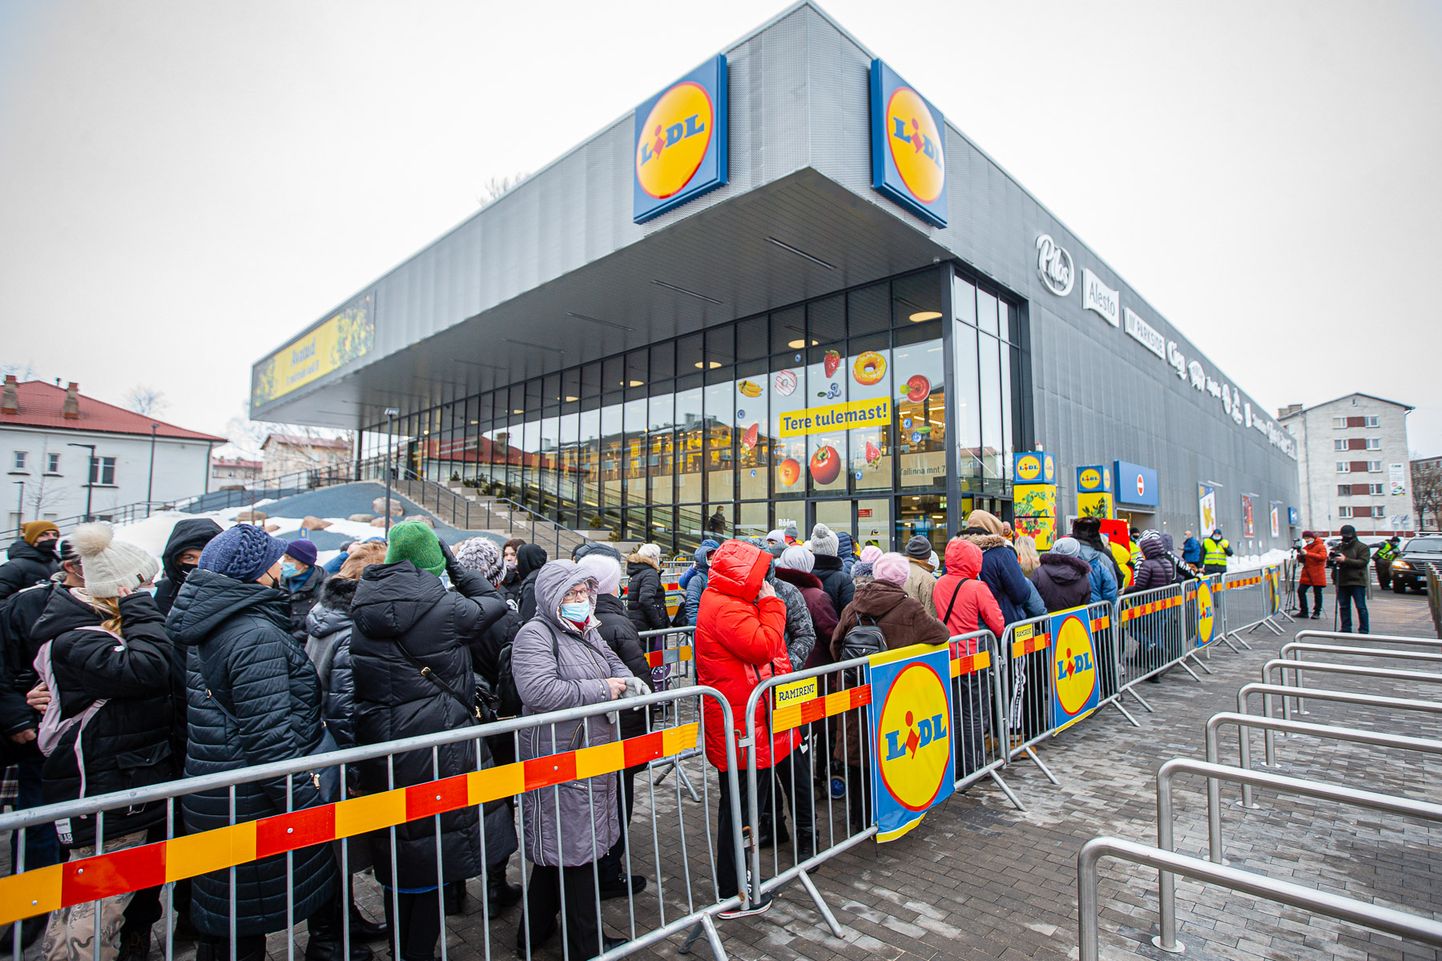 Открытие первого нарвского супермаркета "Lidl" утром 3 марта.